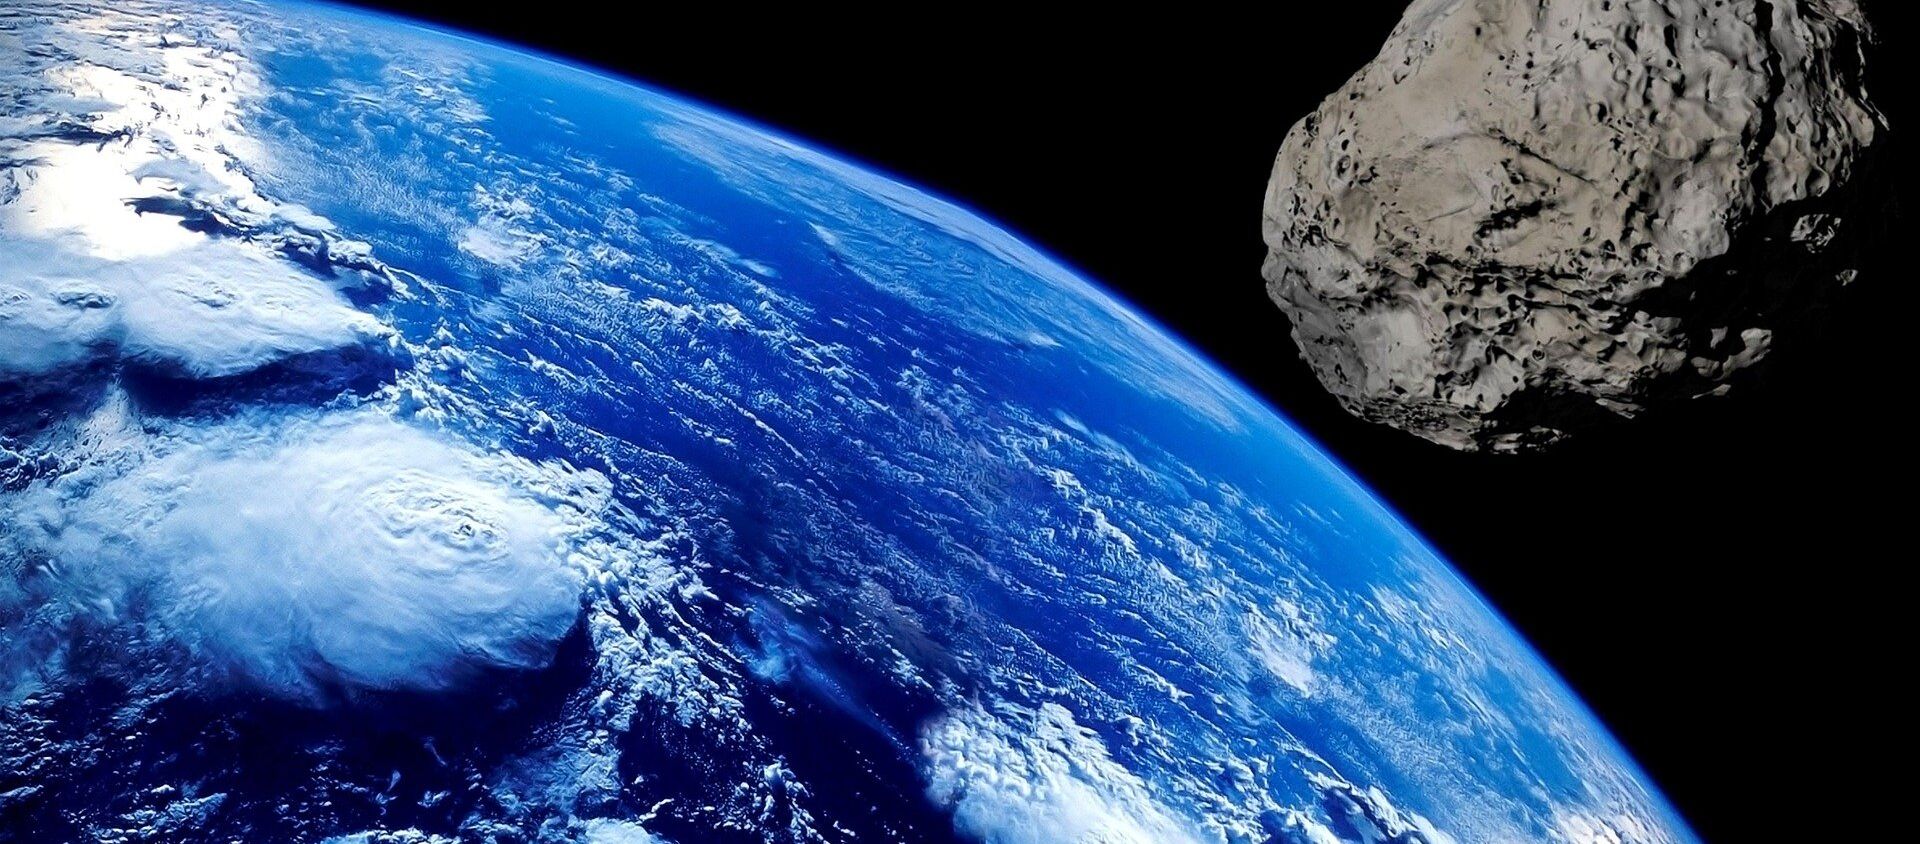 Asteroid  - Sputnik International, 1920, 26.06.2019